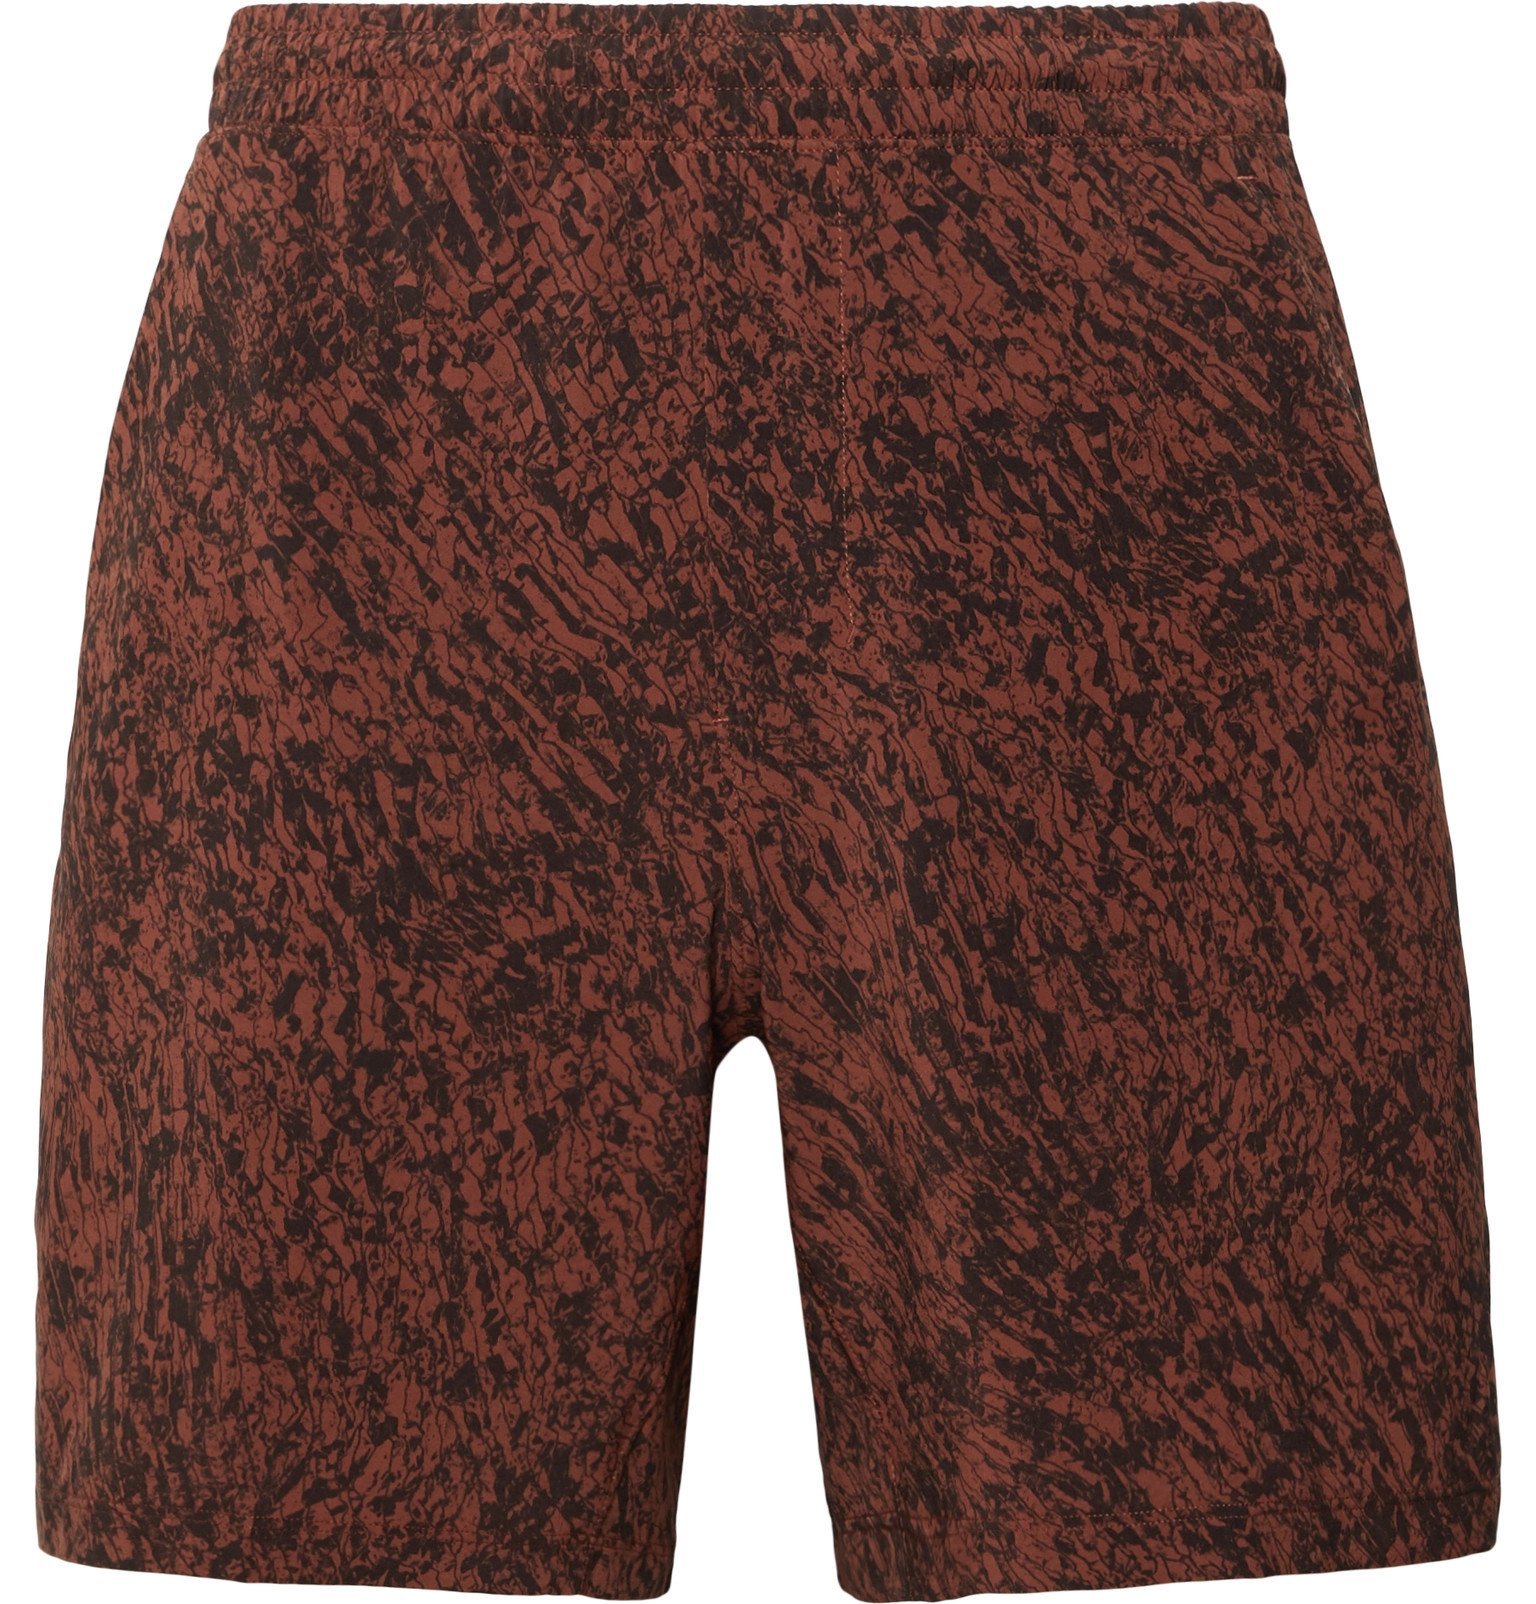 lululemon shorts with mesh trim